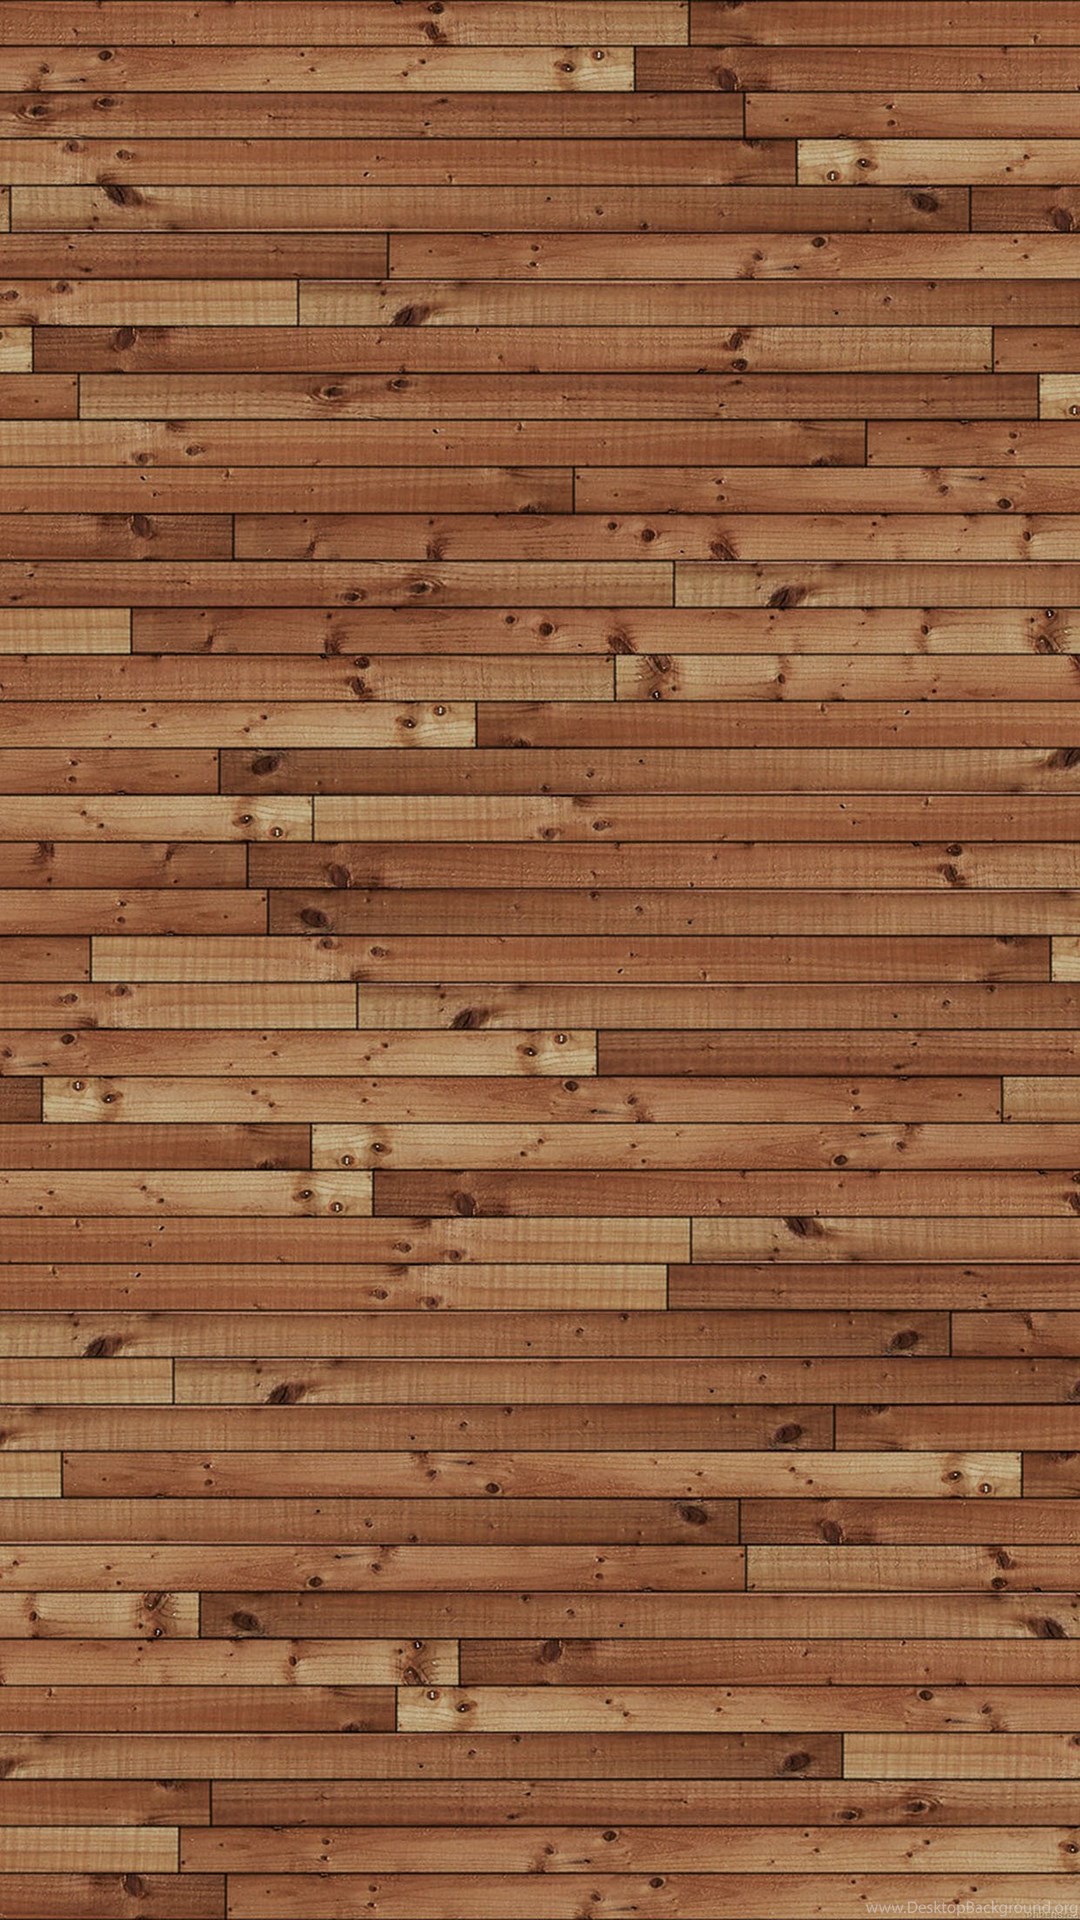 Co Va98 Wallpaper Wood Desk Texture 34 Iphone6 Plus Wallpaper Jpg Desktop Background